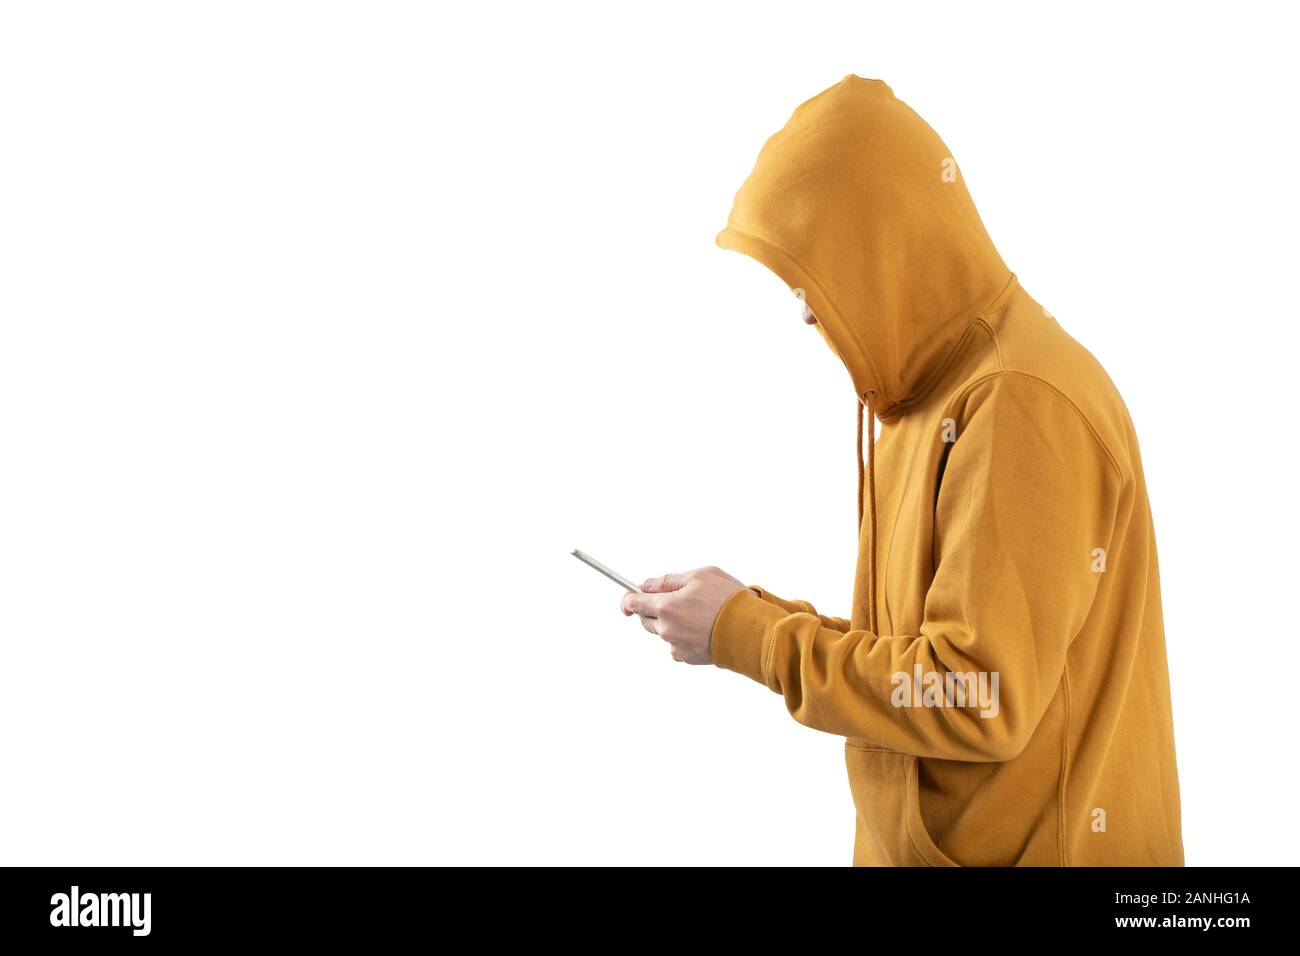 Personne anonyme cachée avec une capuche utilise un téléphone mobile Banque D'Images